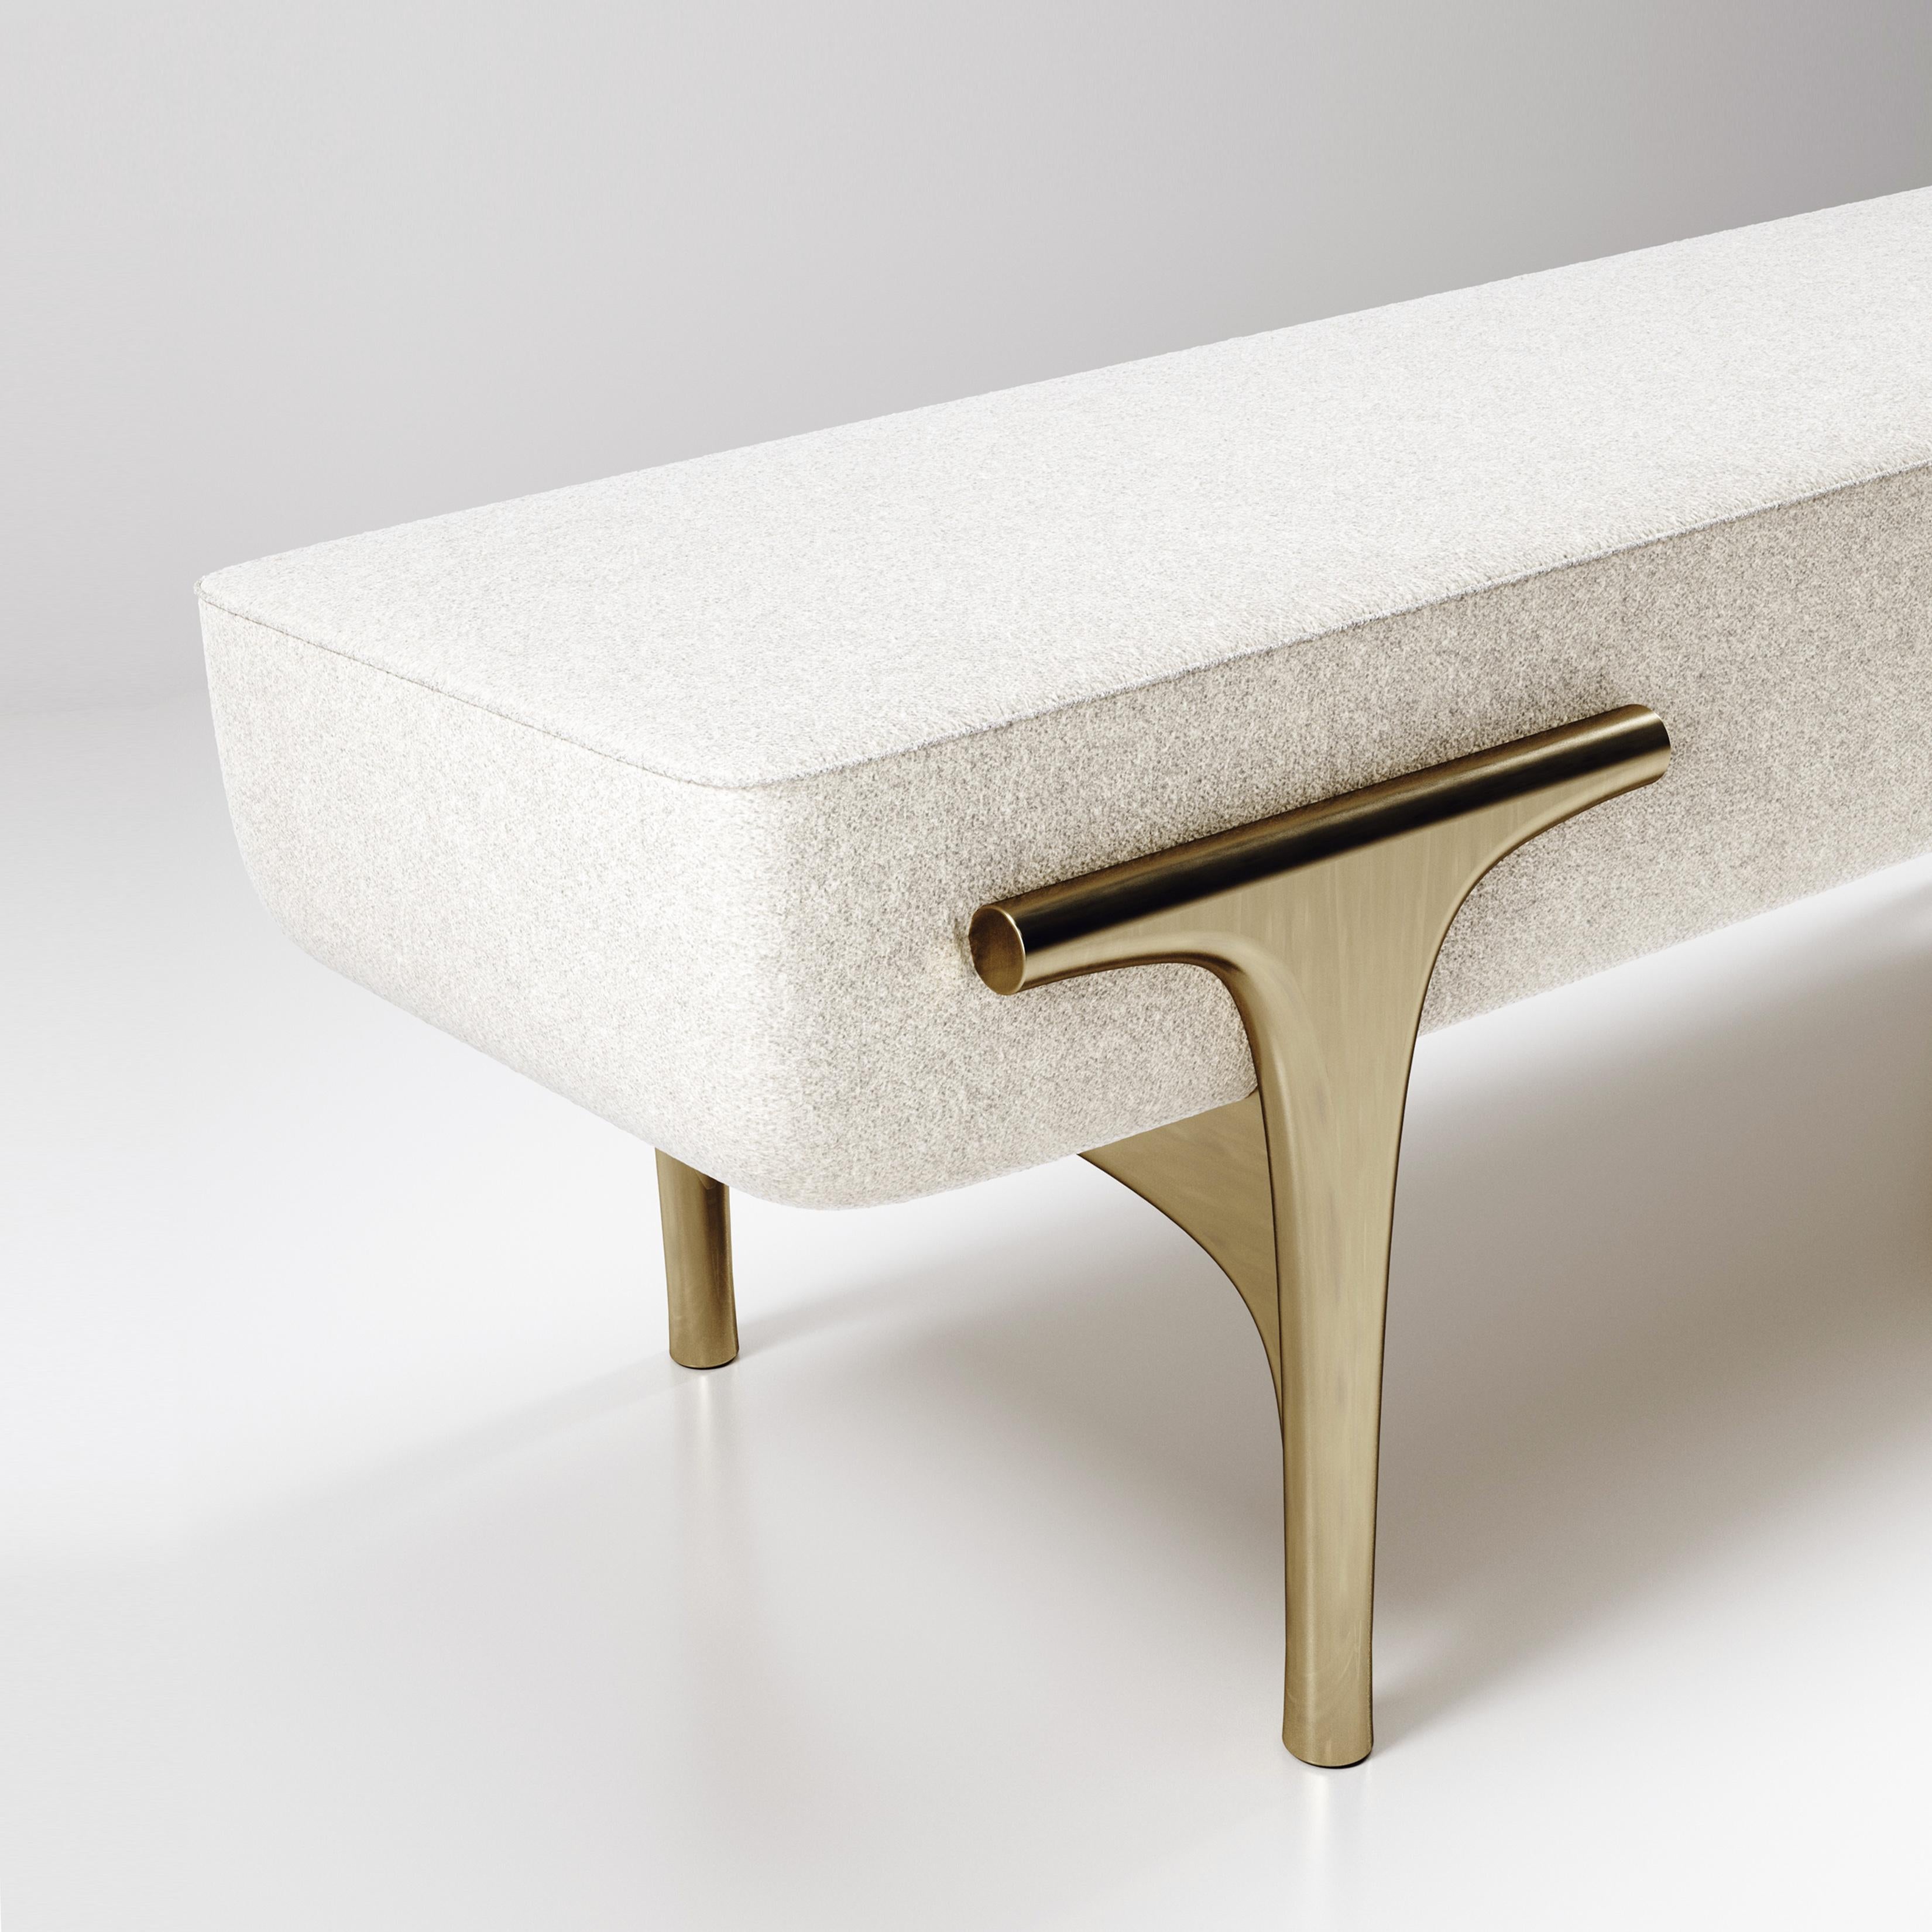 Die Bank Ramo von R & Y Augousti ist ein elegantes und vielseitiges Möbelstück. Das gepolsterte Möbelstück bietet Komfort und bewahrt mit dem Gestell und den Details aus Messing in Bronze-Patina eine einzigartige Ästhetik. Der cremefarbene Stoff ist